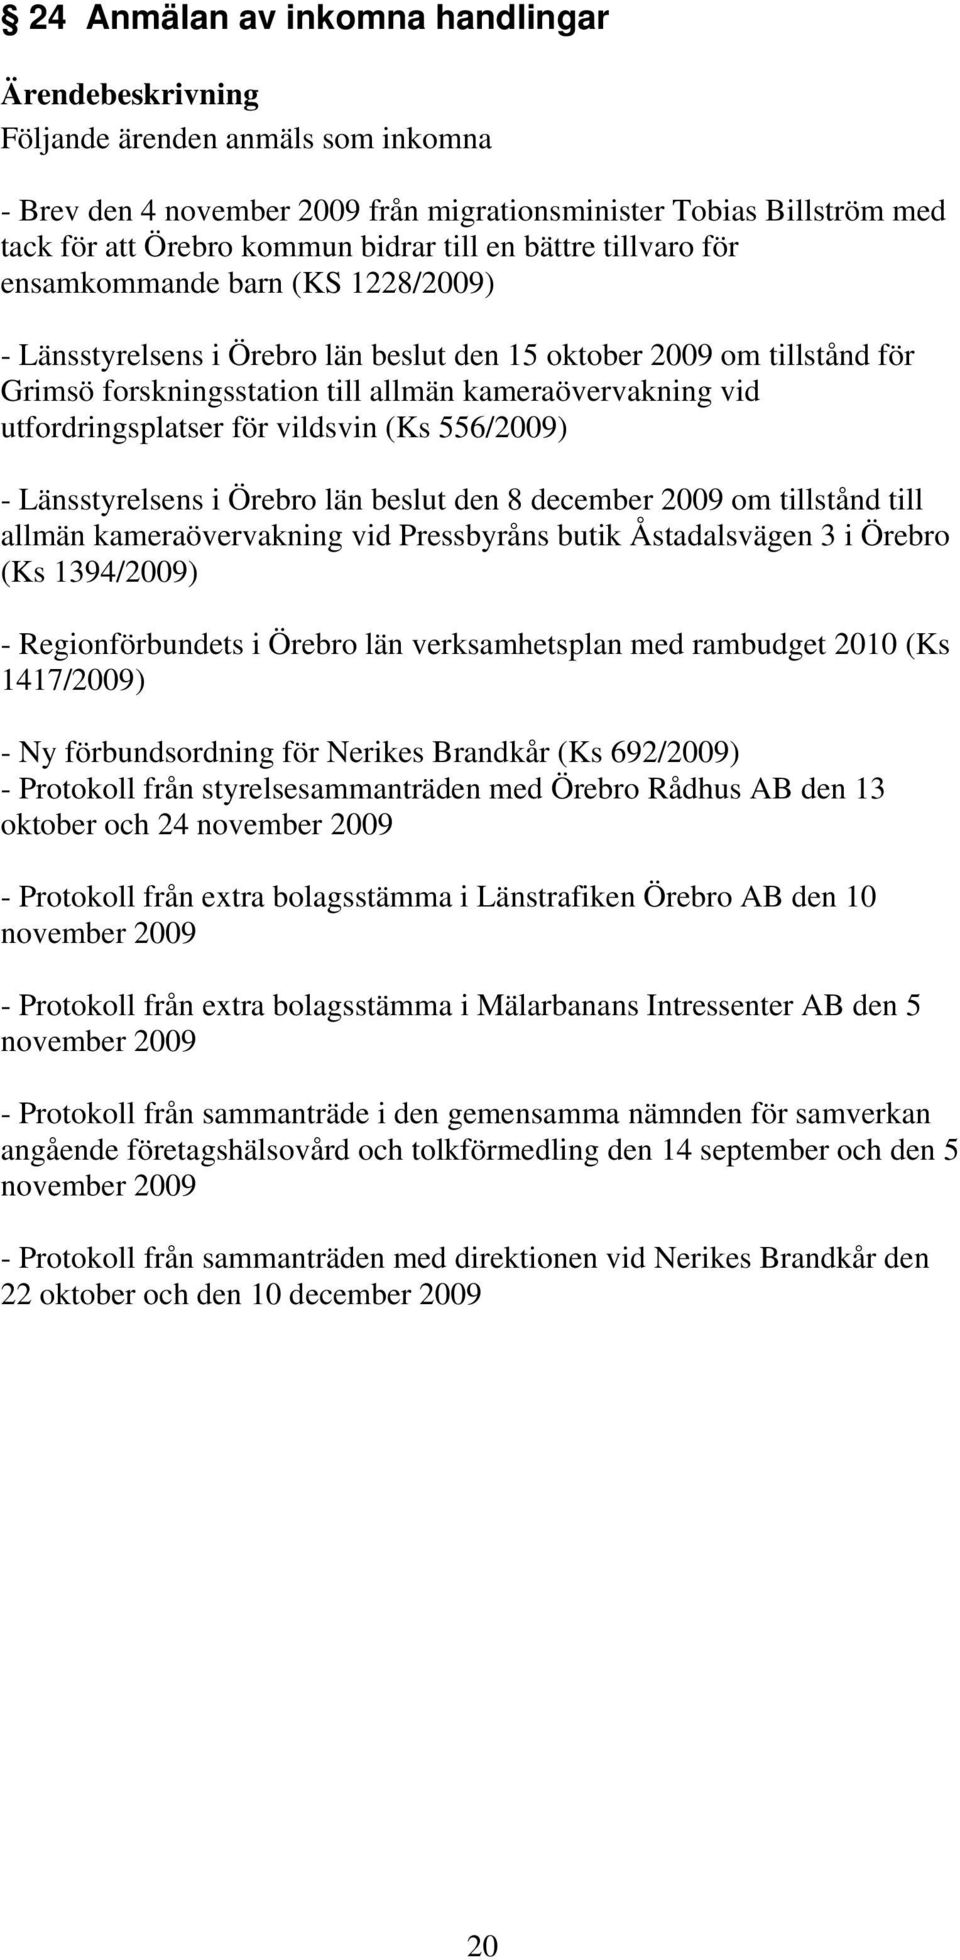 vildsvin (Ks 556/2009) - Länsstyrelsens i Örebro län beslut den 8 december 2009 om tillstånd till allmän kameraövervakning vid Pressbyråns butik Åstadalsvägen 3 i Örebro (Ks 1394/2009) -